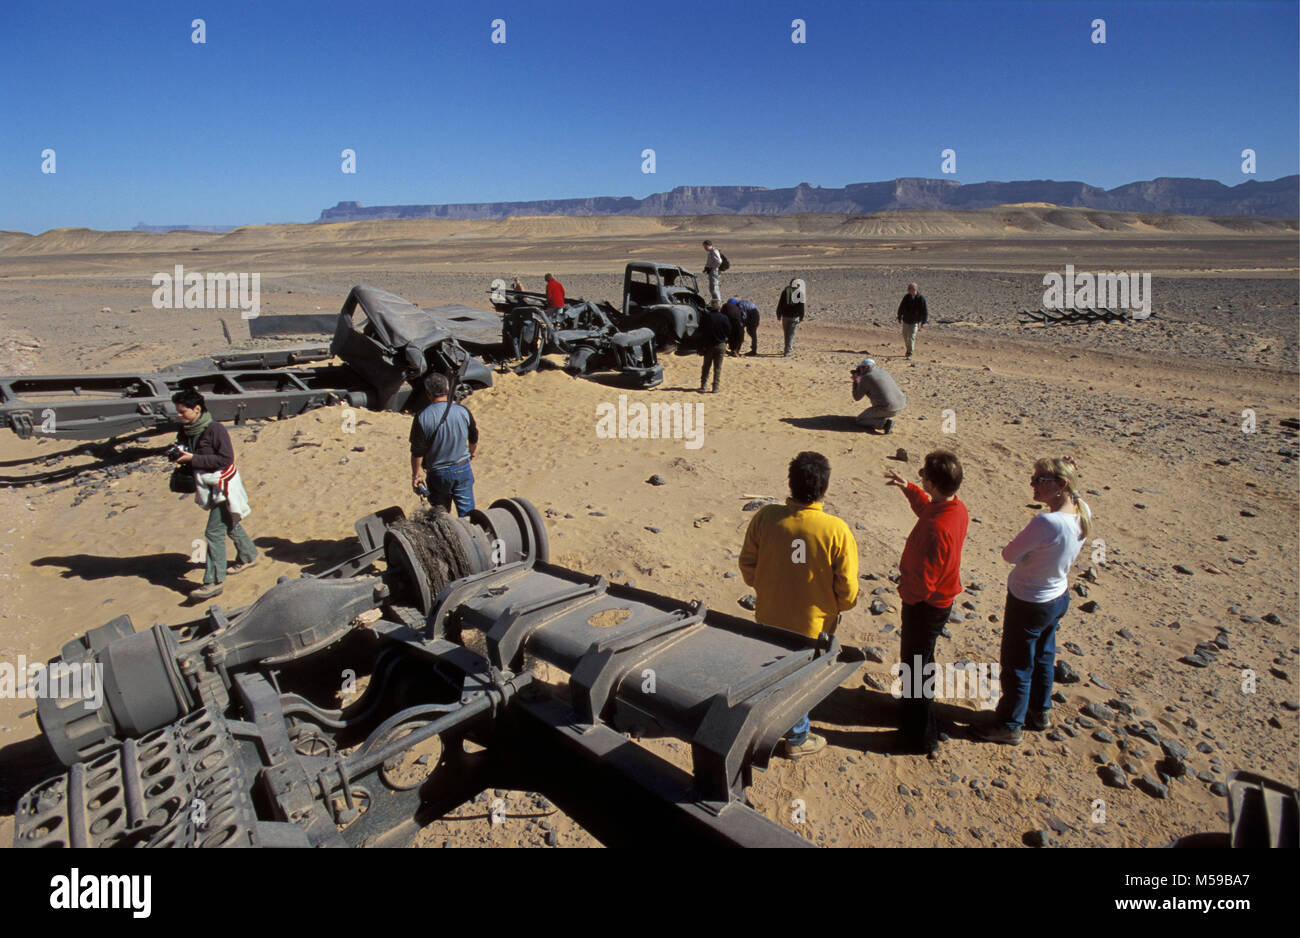 La Libia. Ghat deserto del Sahara. I turisti sondaggio italiano distrutto camion dell'esercito da una seconda guerra mondiale battaglia con il francese nel deserto del Sahara. Foto Stock